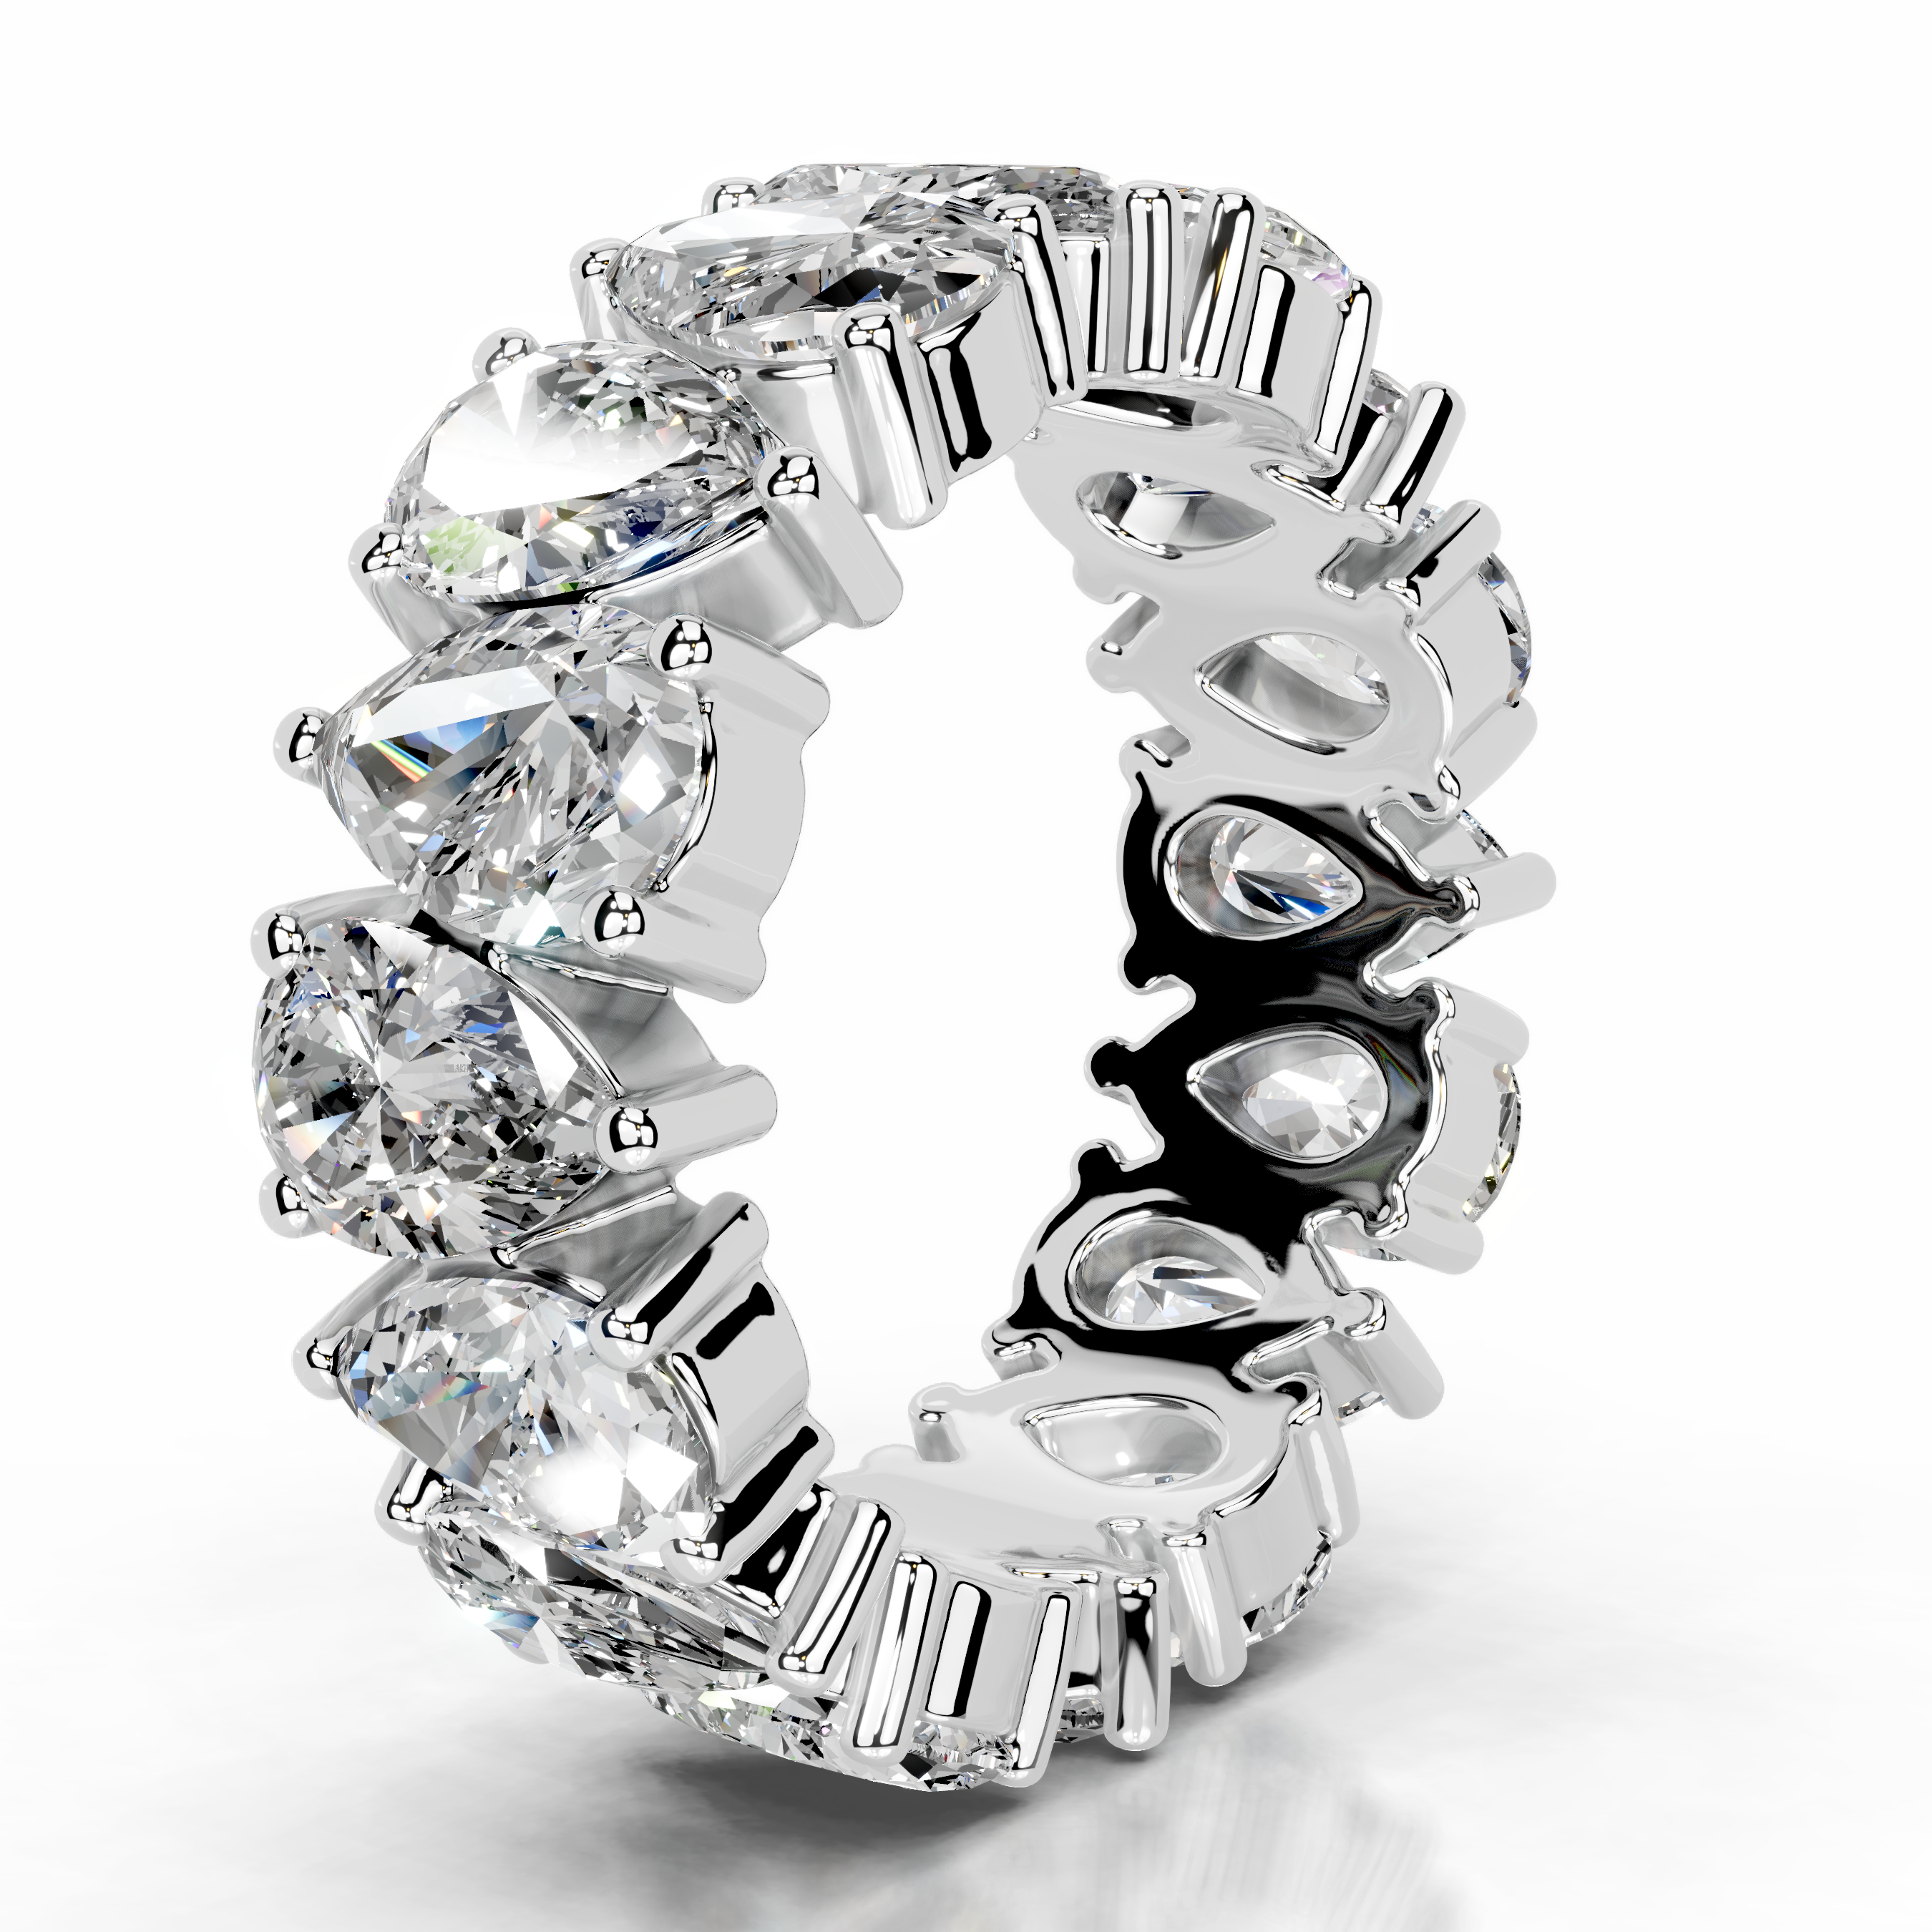 Sarah Lab Grown Diamond Wedding Ring   (6 Carat) -14K White Gold